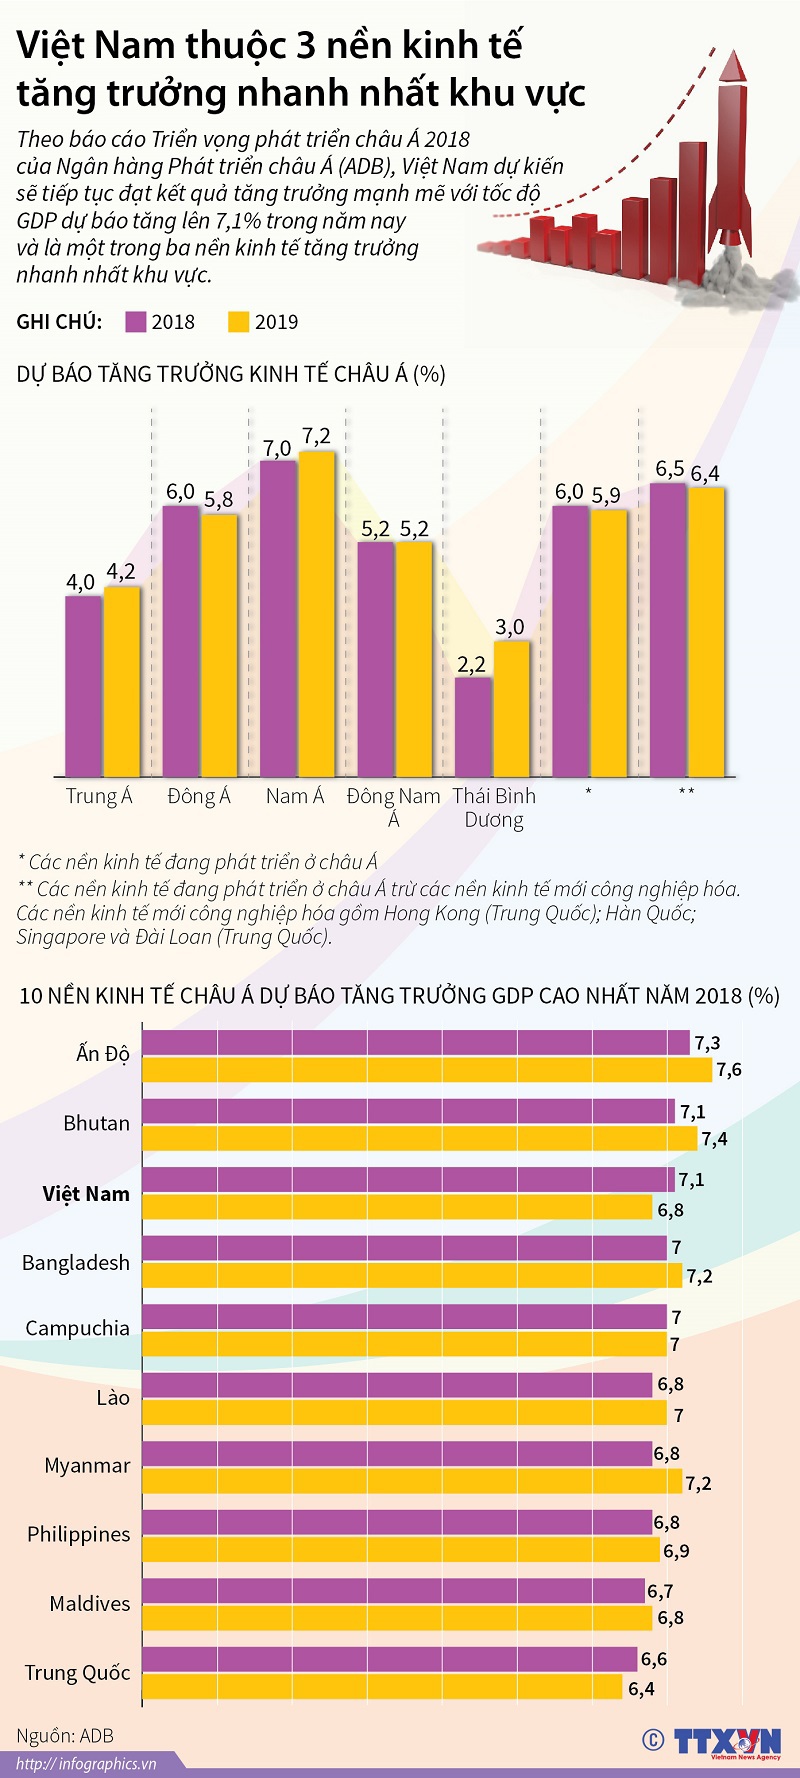 Việt Nam thuộc 3 nền kinh tế tăng trưởng nhanh nhất khu vực - Ảnh 1